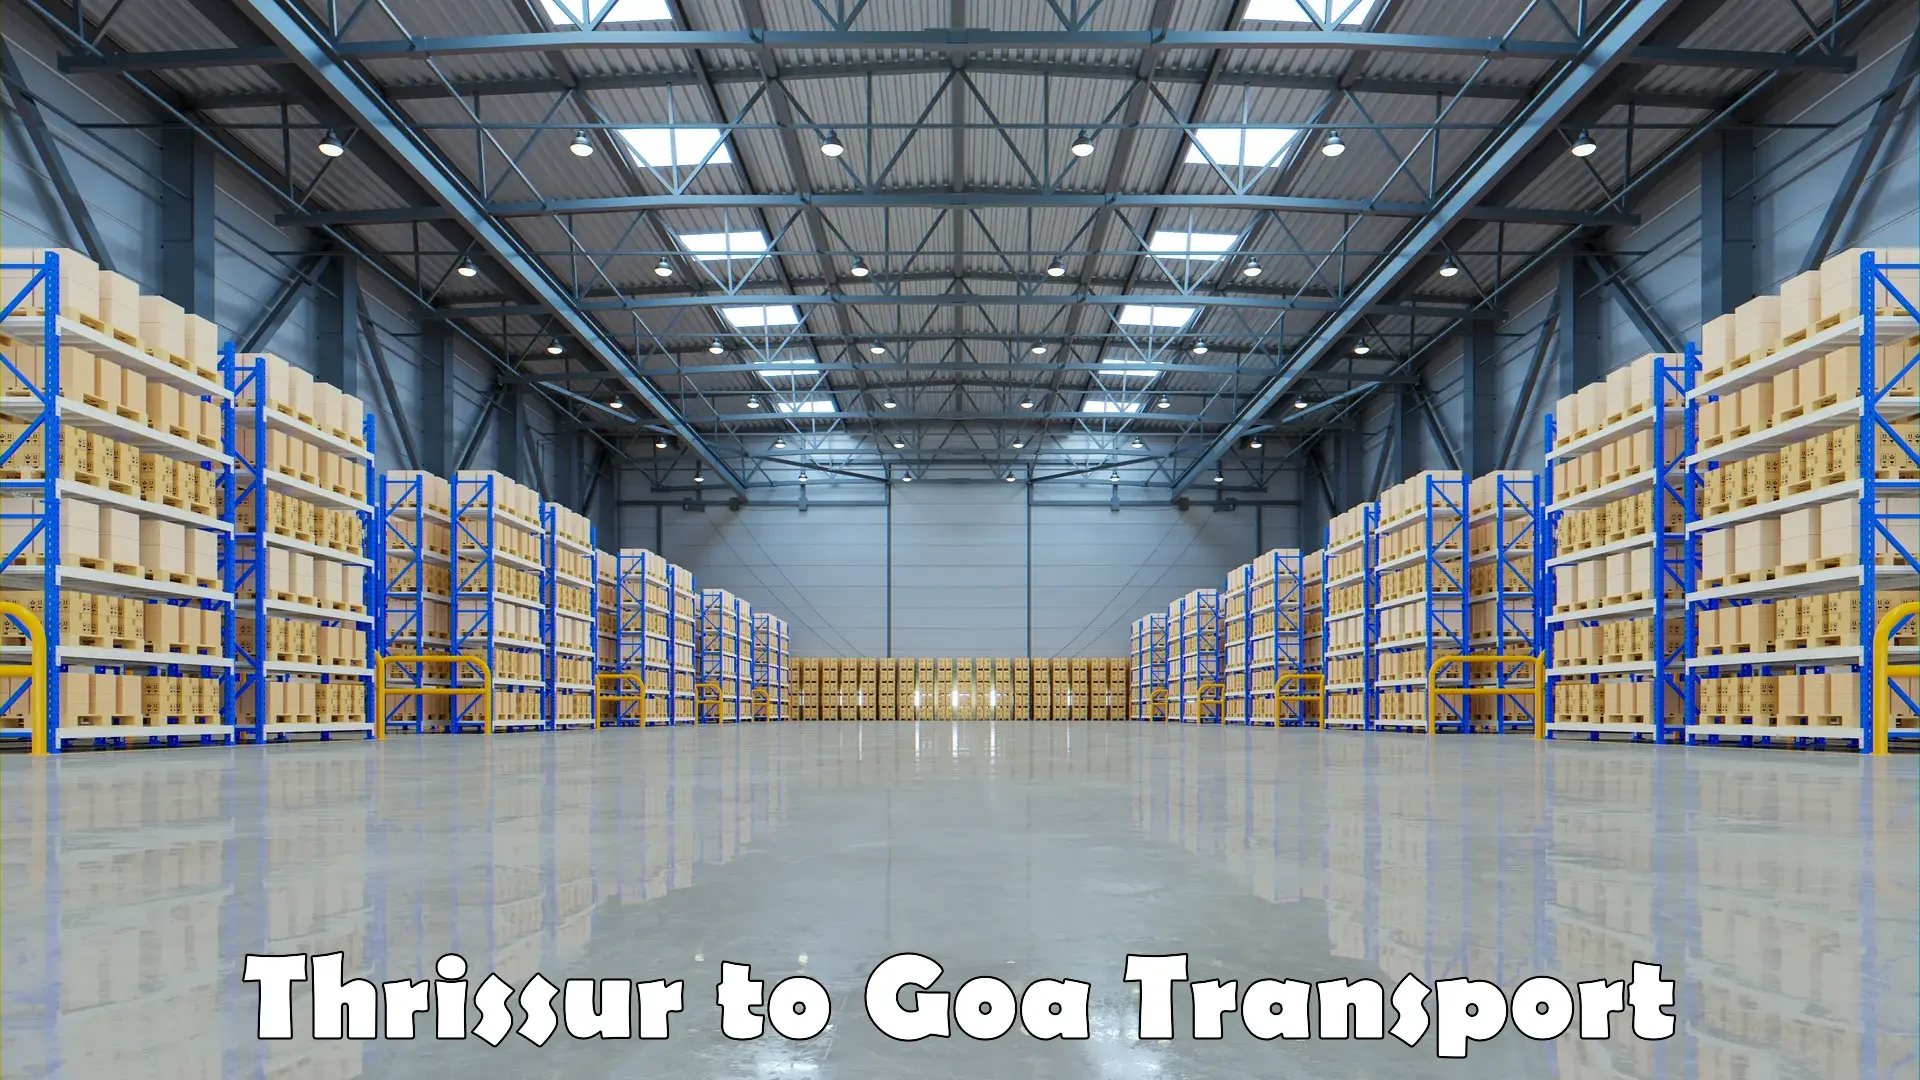 Online transport service Thrissur to Goa